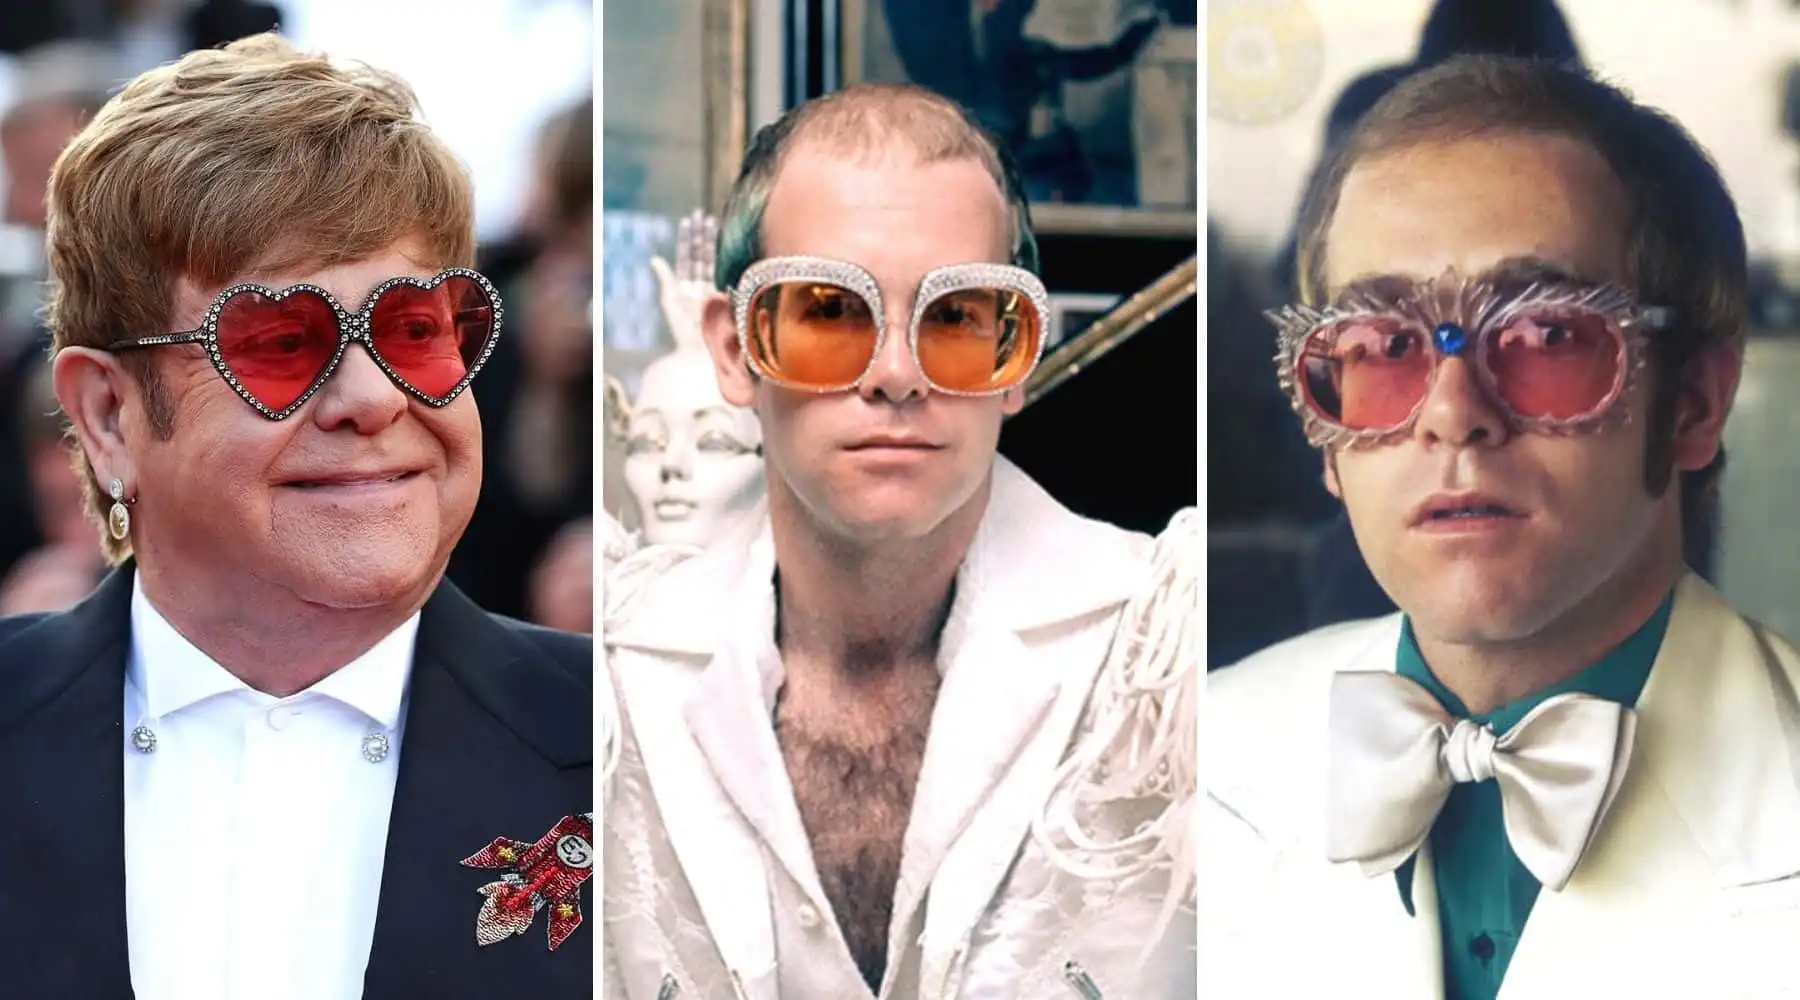 What happned to Elton John?